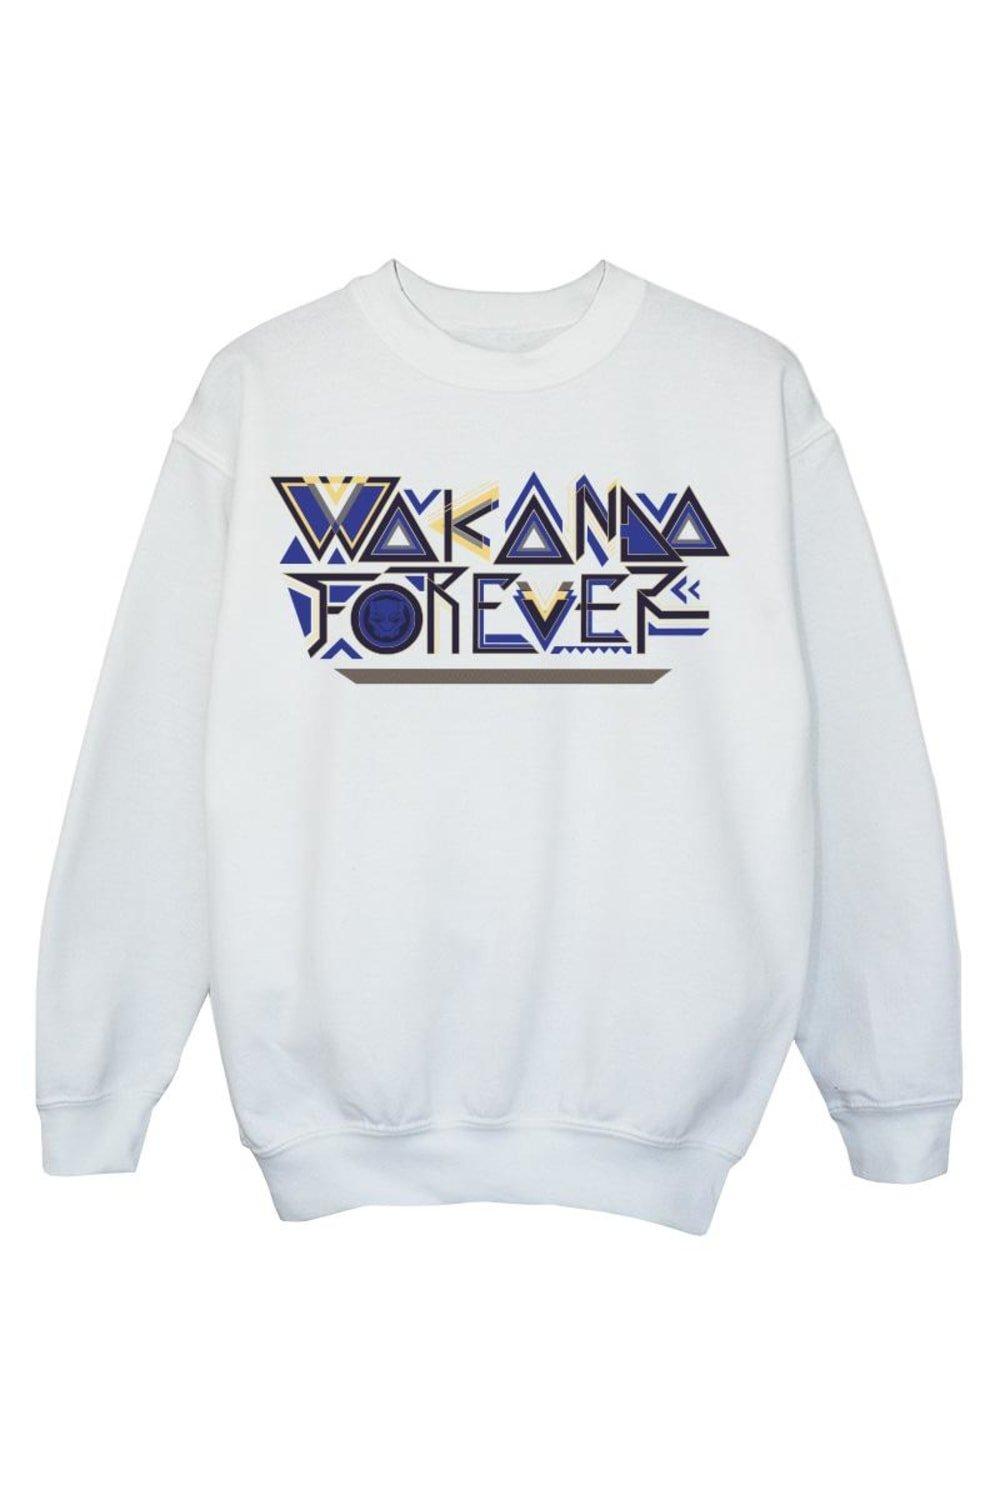 Wakanda Forever Tribal Text Sweatshirt